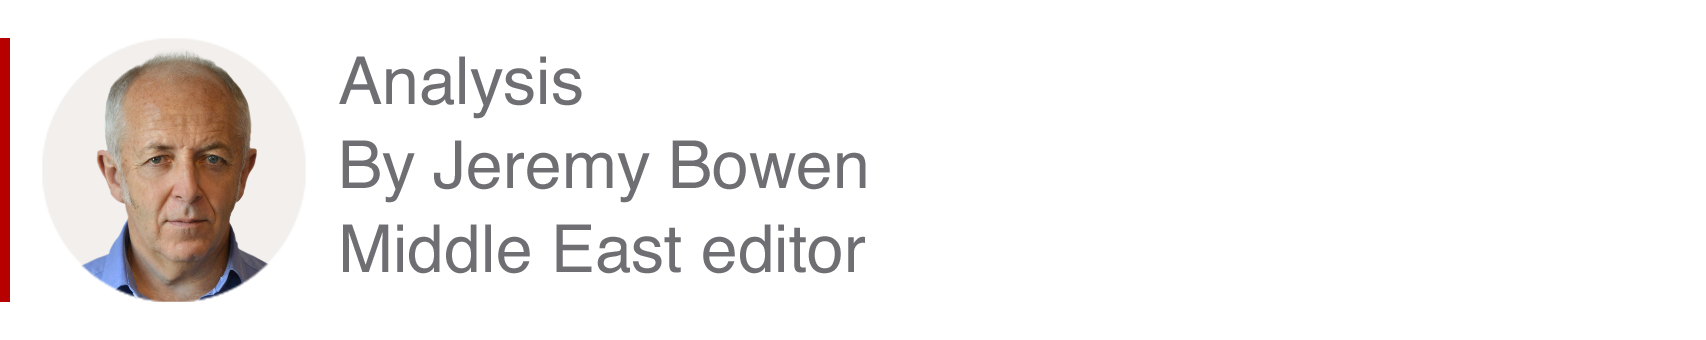 Блок анализа Джереми Боуэна, редактора по Ближнему Востоку